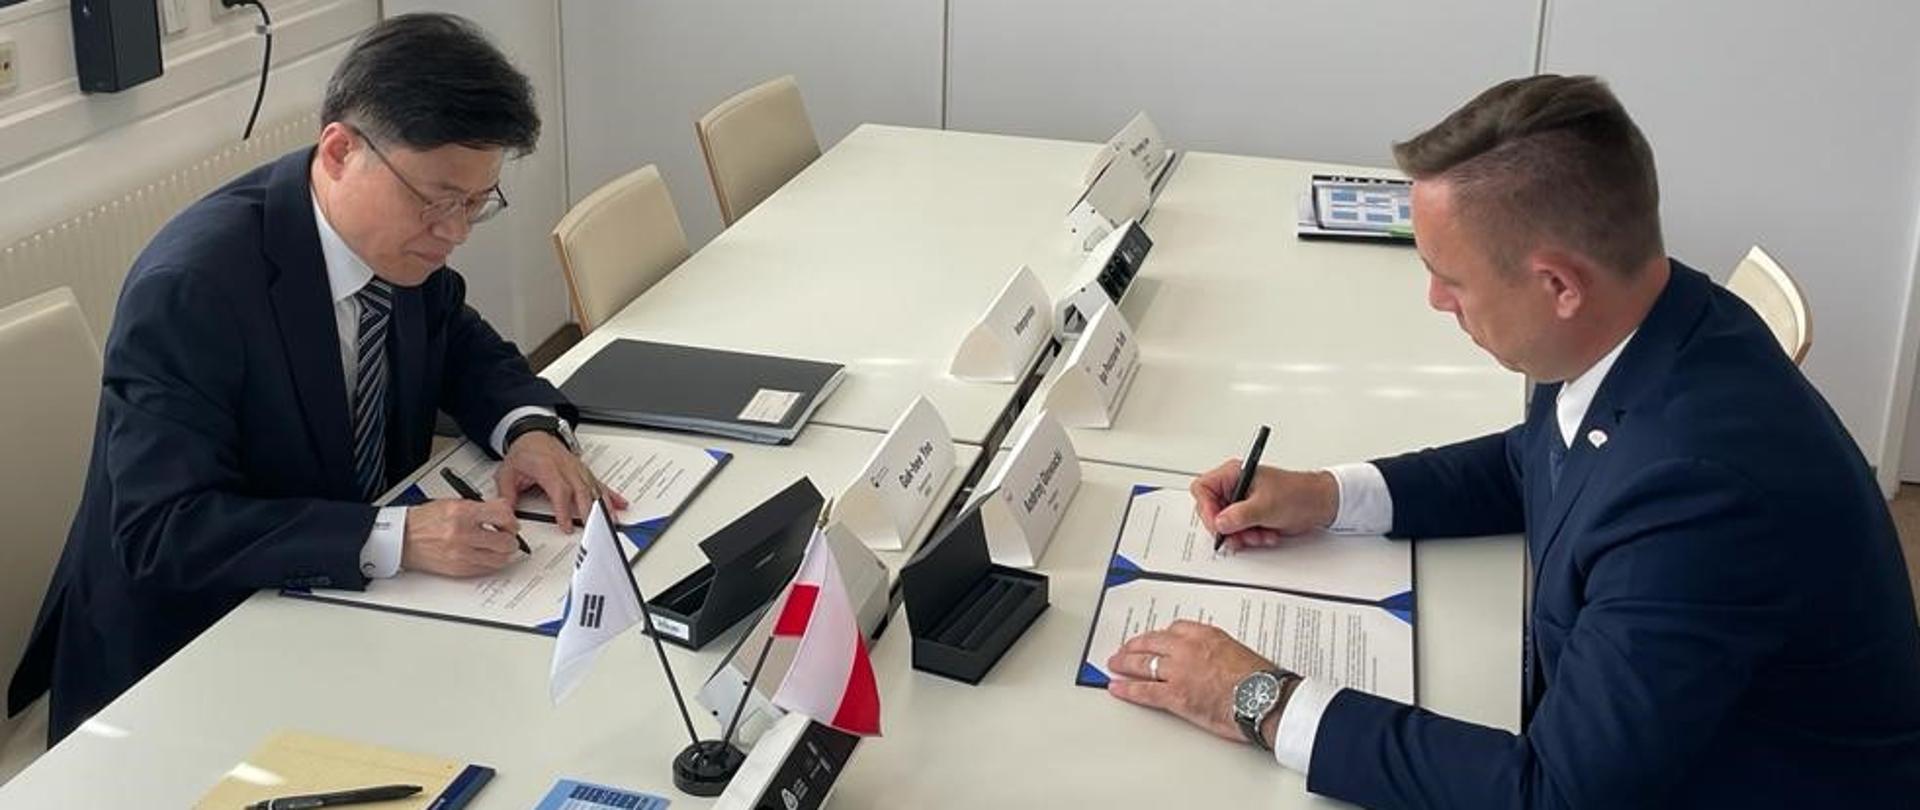 Gukhee YOO, przewodniczący Komisji Bezpieczeństwa Jądrowego Korei Południowej oraz Andrzej Głowacki, Prezes Państwowej Agencji Atomistyki podpisują porozumienie o współpracy